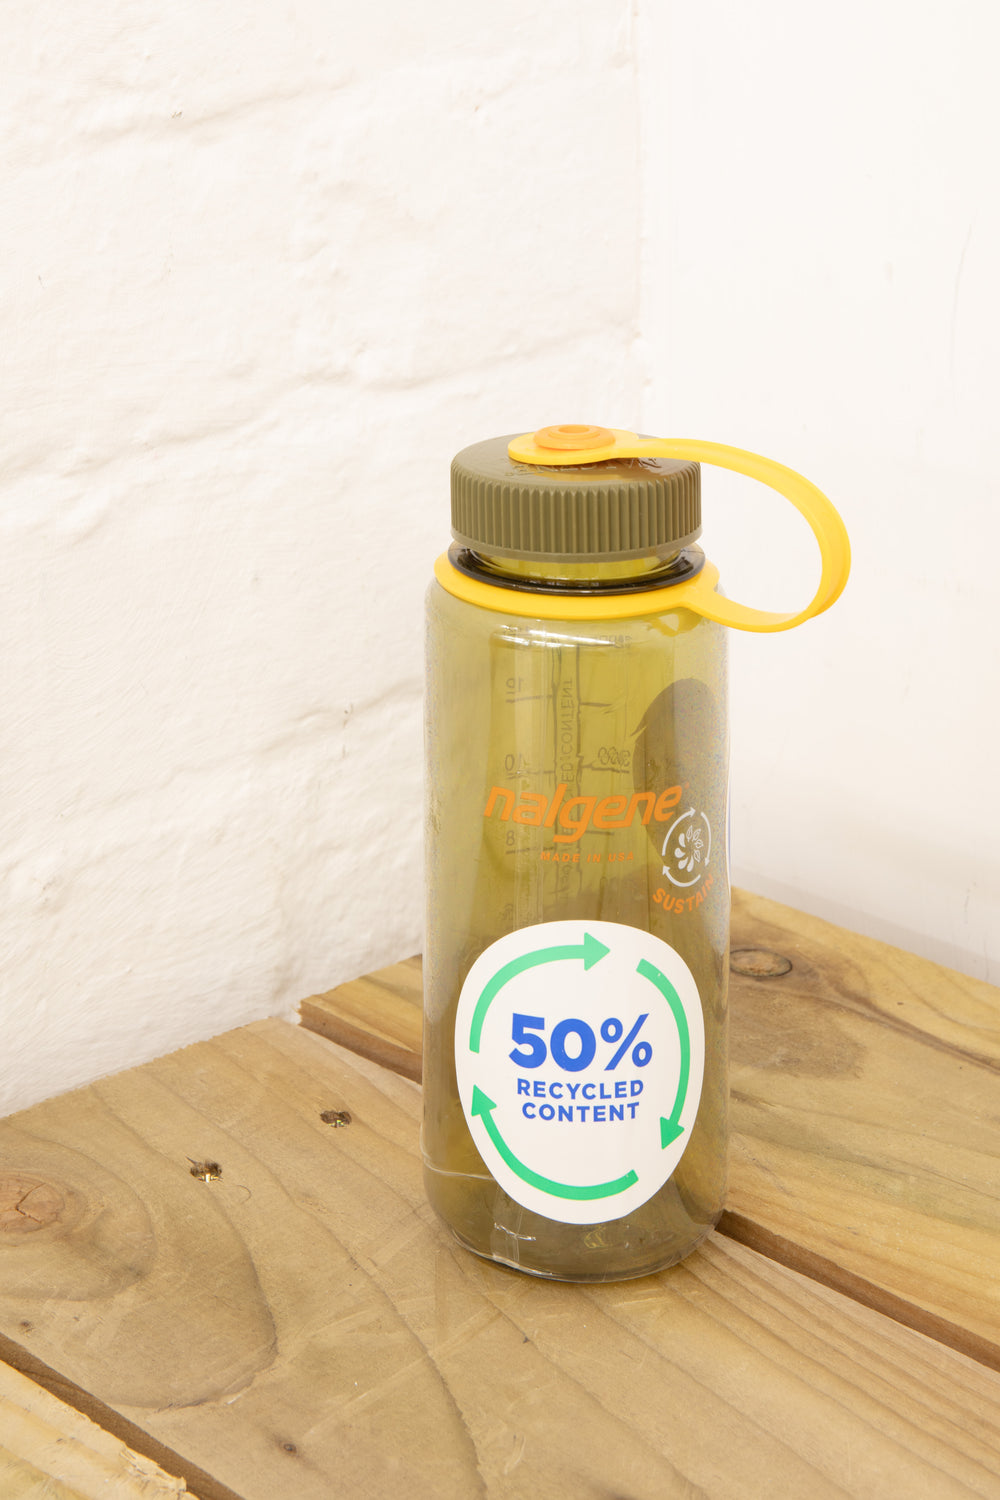 Nalgene - Sustain 500ml Wide Mouth Water Bottle